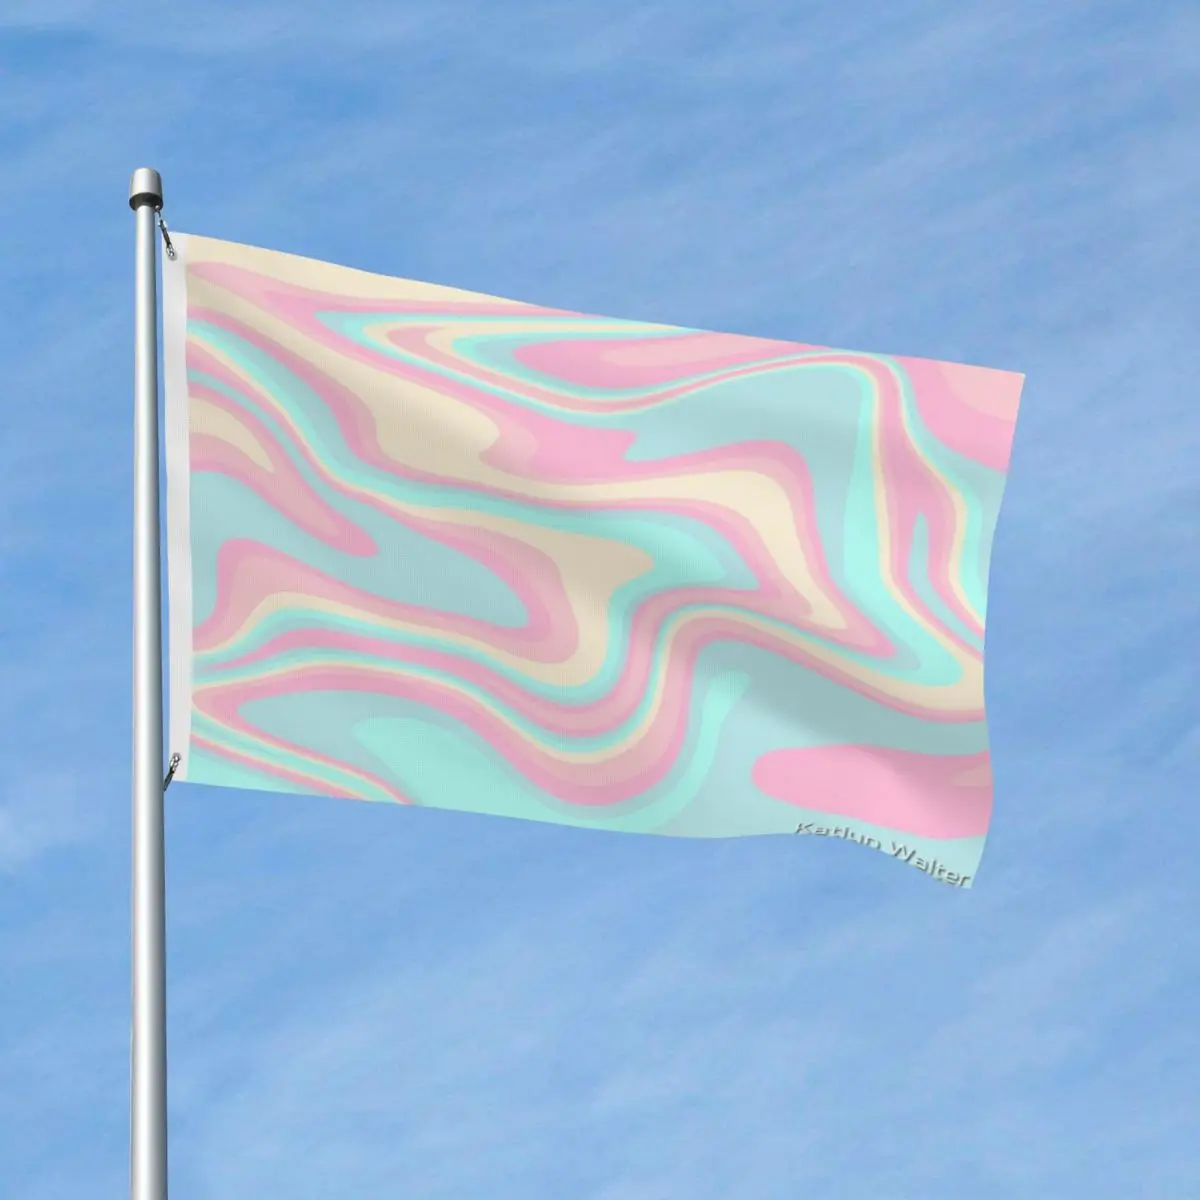 

Галстук красящий флаг полиэстер материал декоративные яркие цвета мягкая ткань легкий без запаха настраиваемый